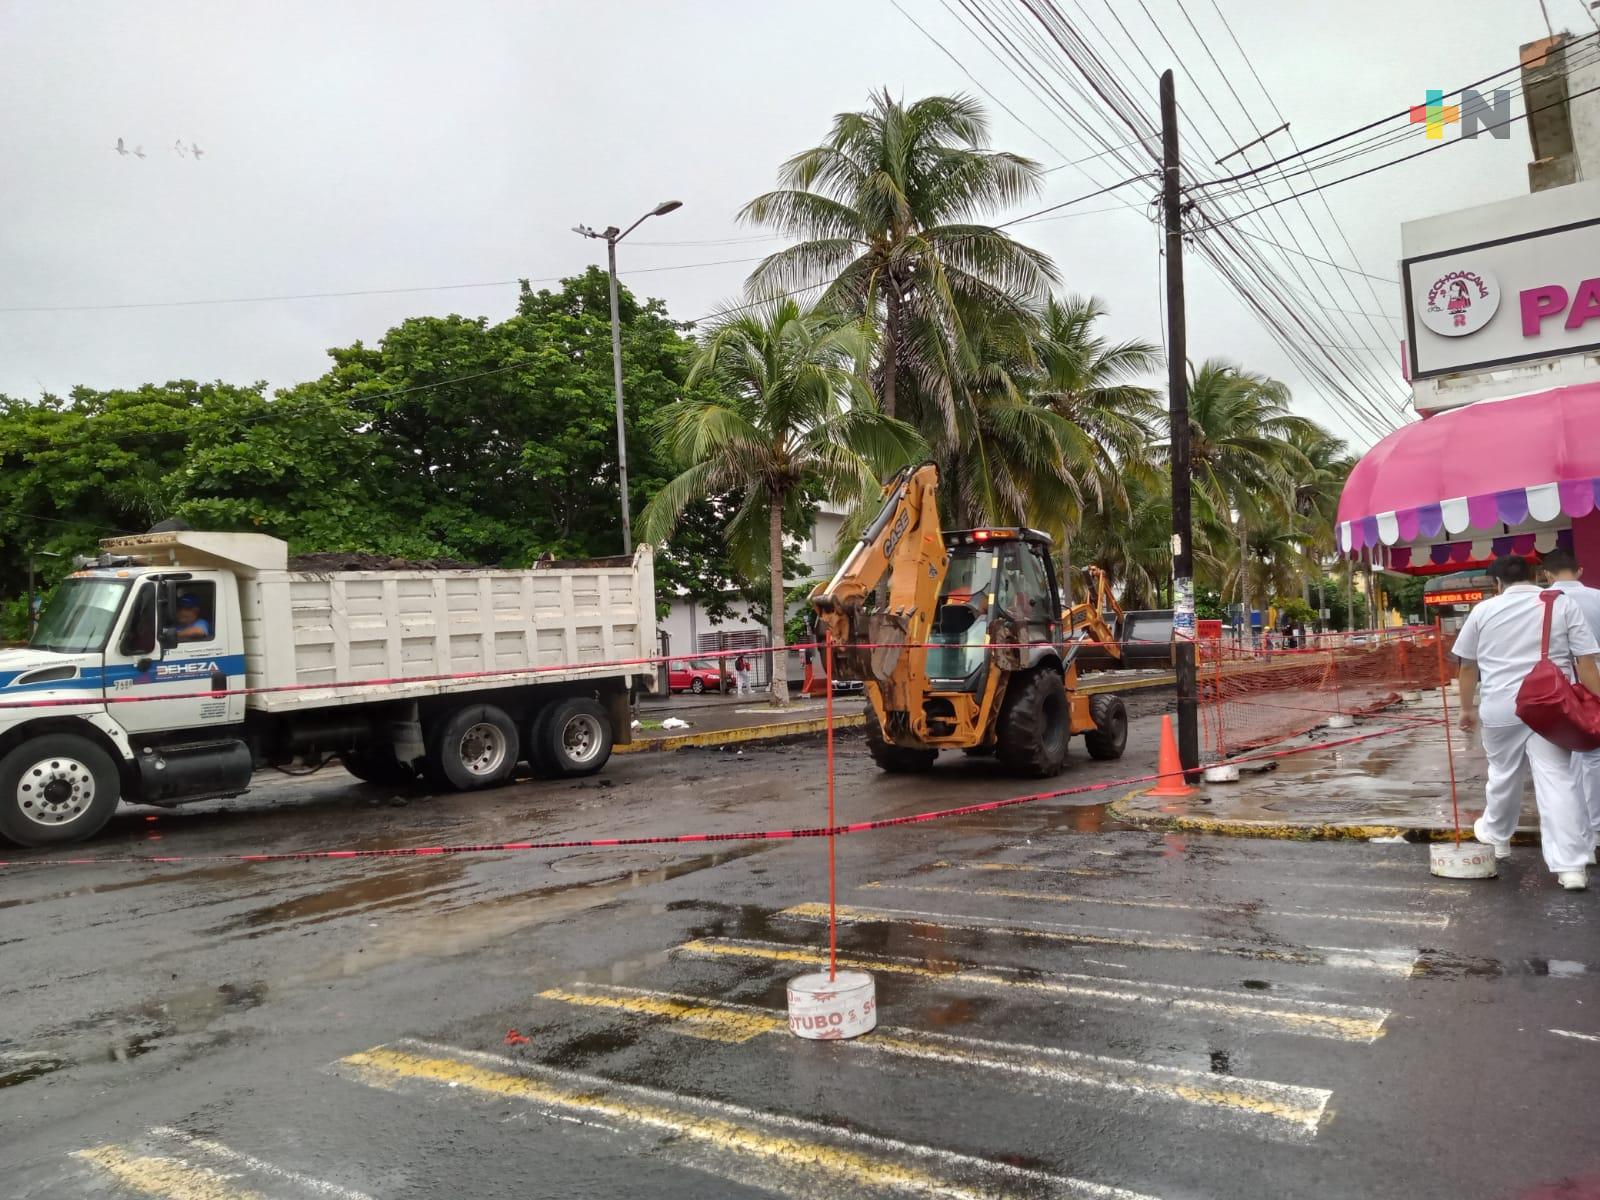 Caos vial por obra de mantenimiento en zona transitada de Veracruz puerto